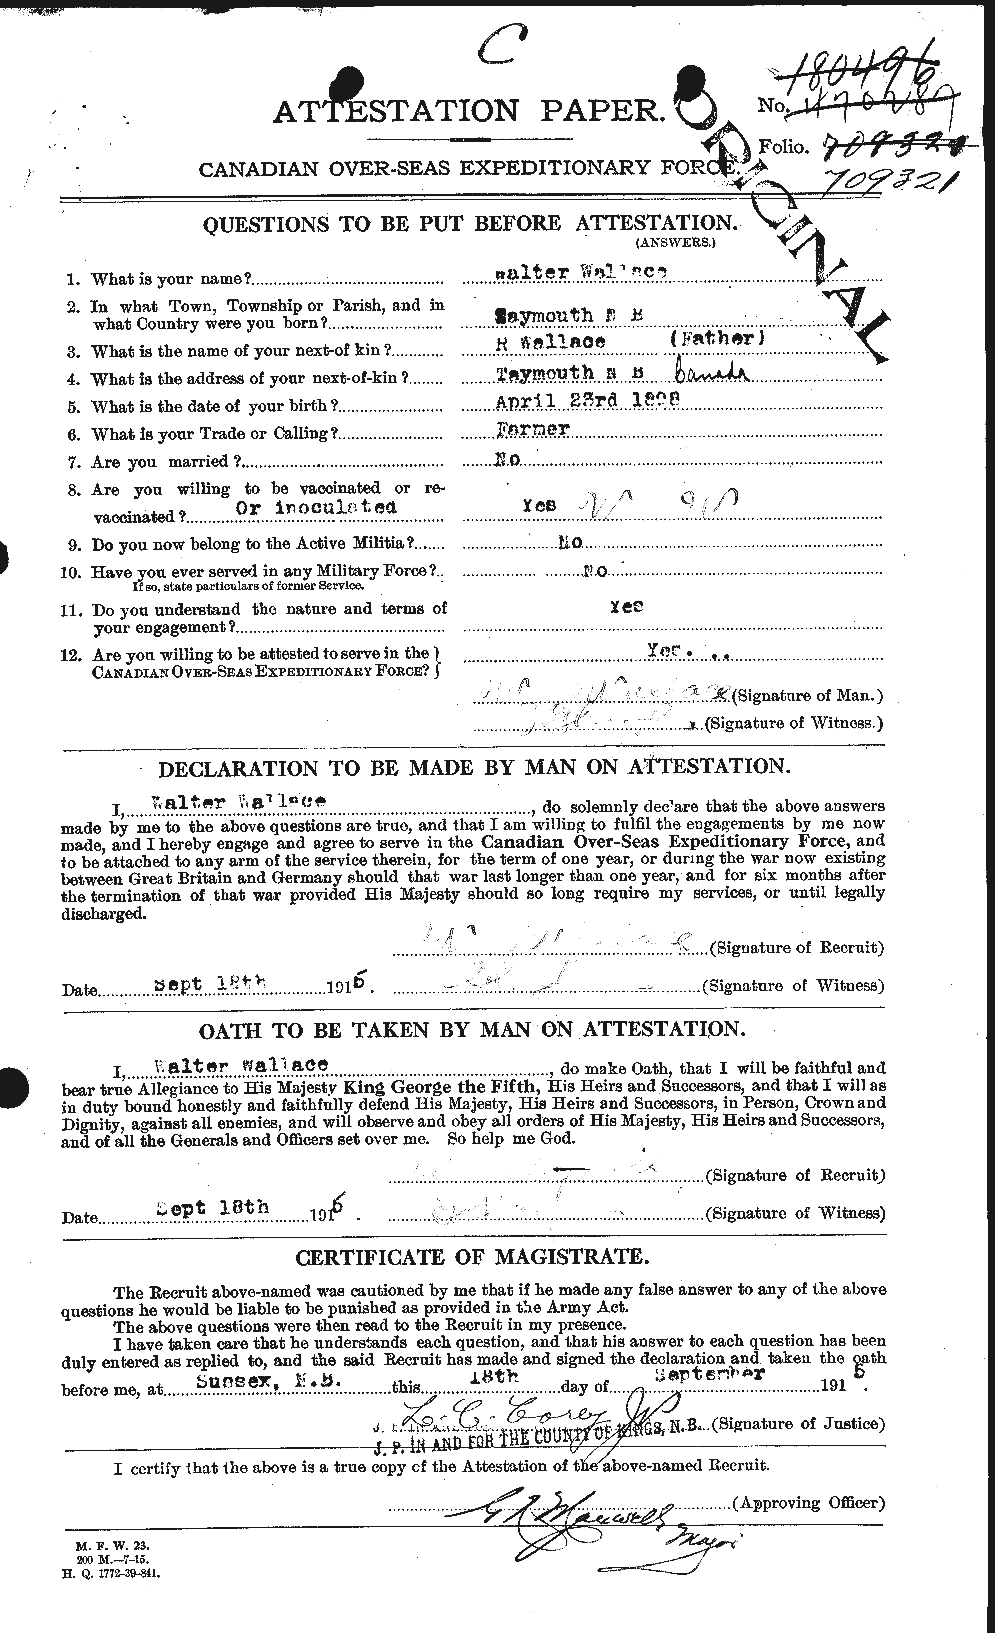 Dossiers du Personnel de la Première Guerre mondiale - CEC 660685a